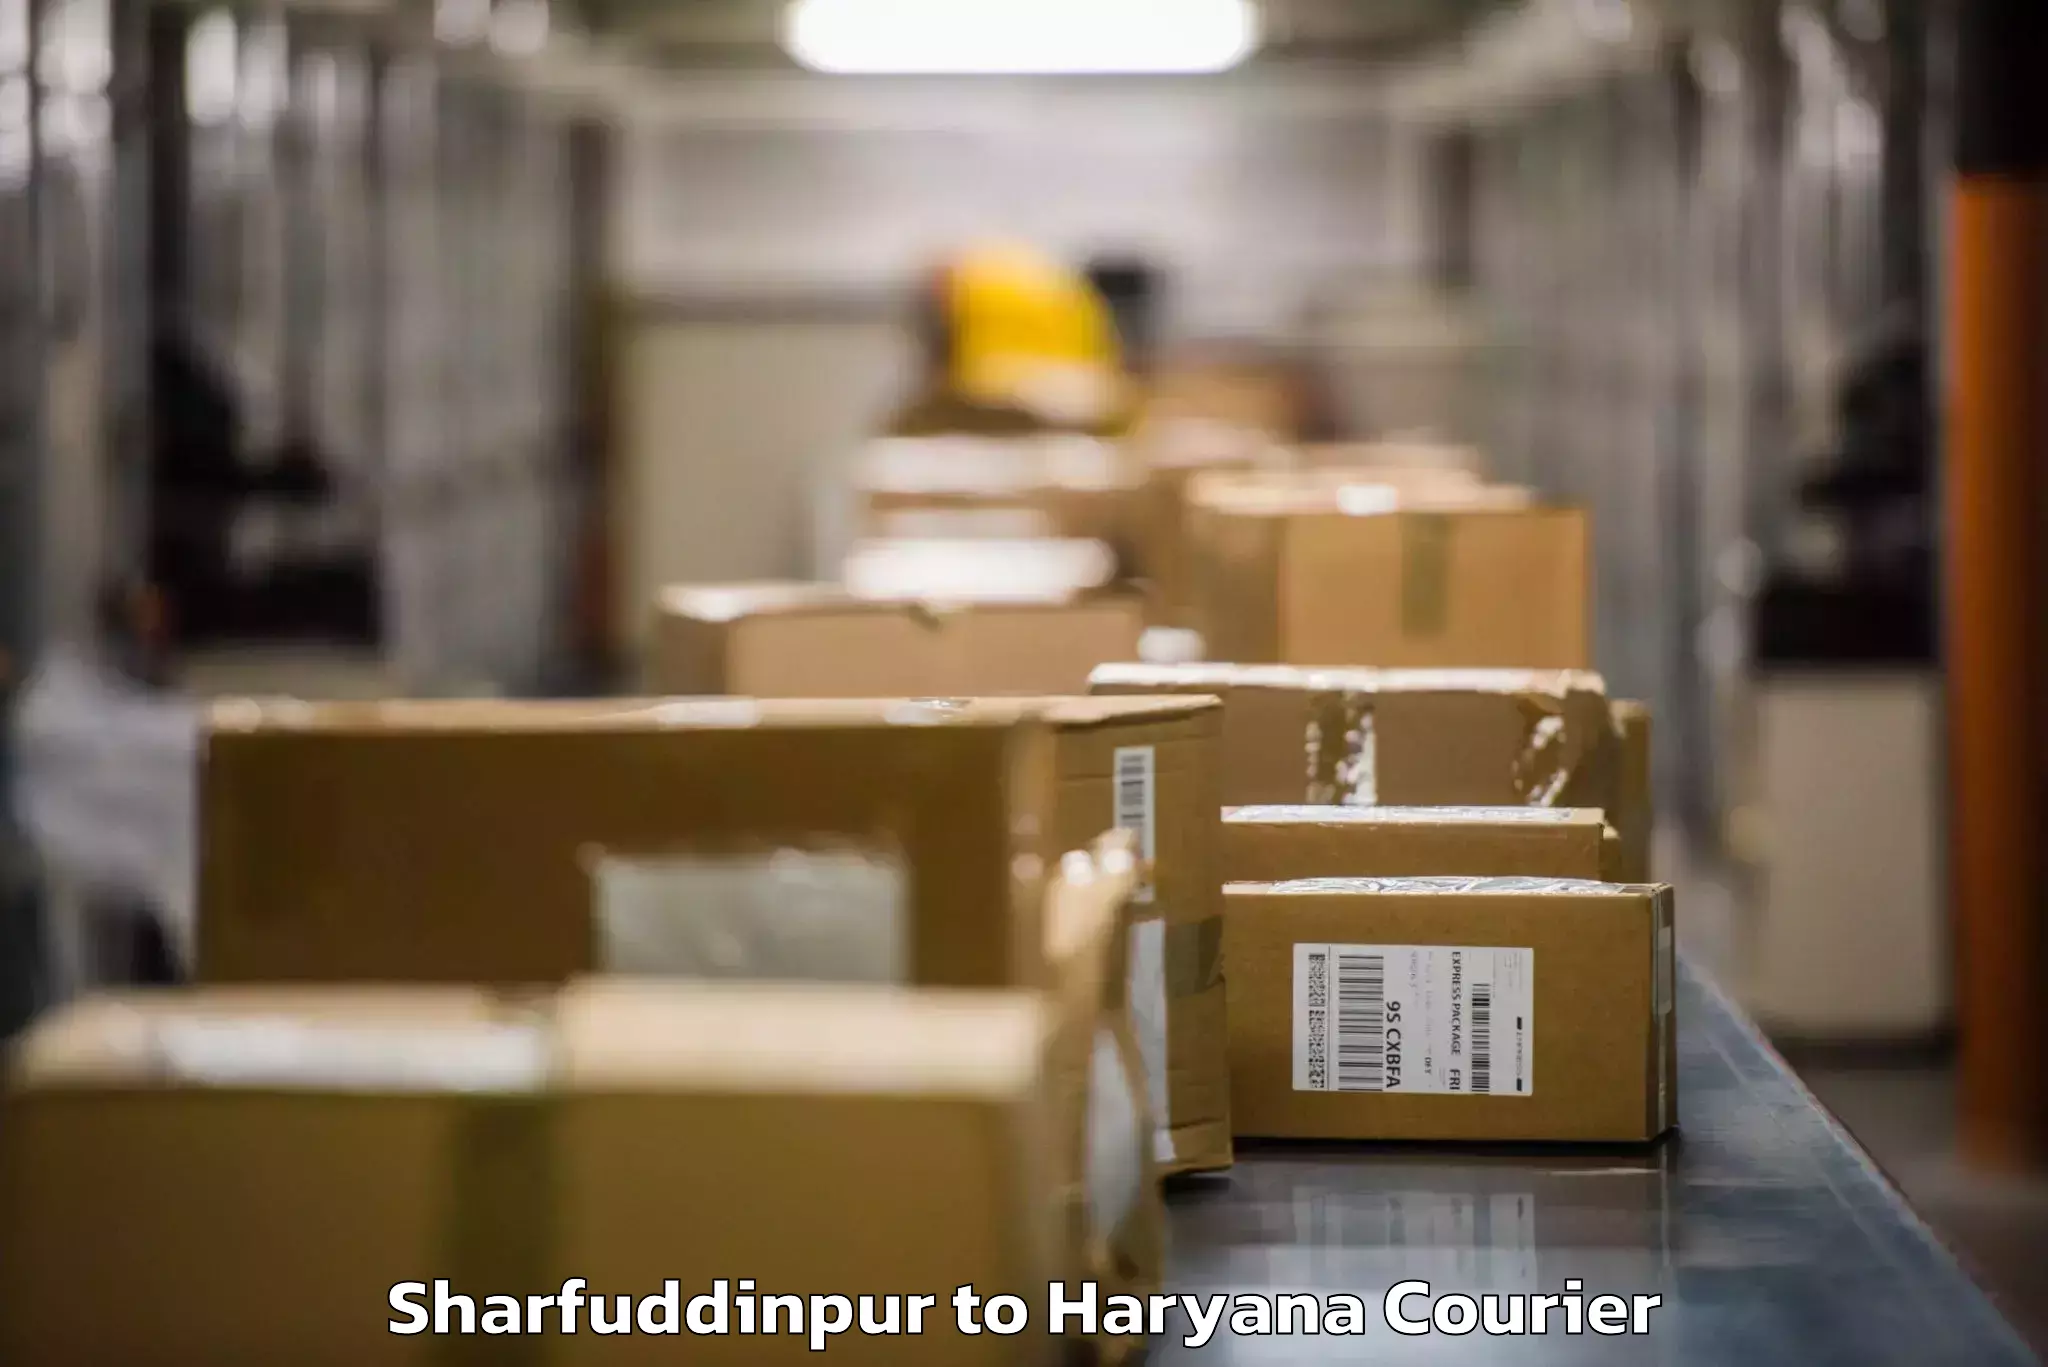 Baggage shipping service Sharfuddinpur to Faridabad